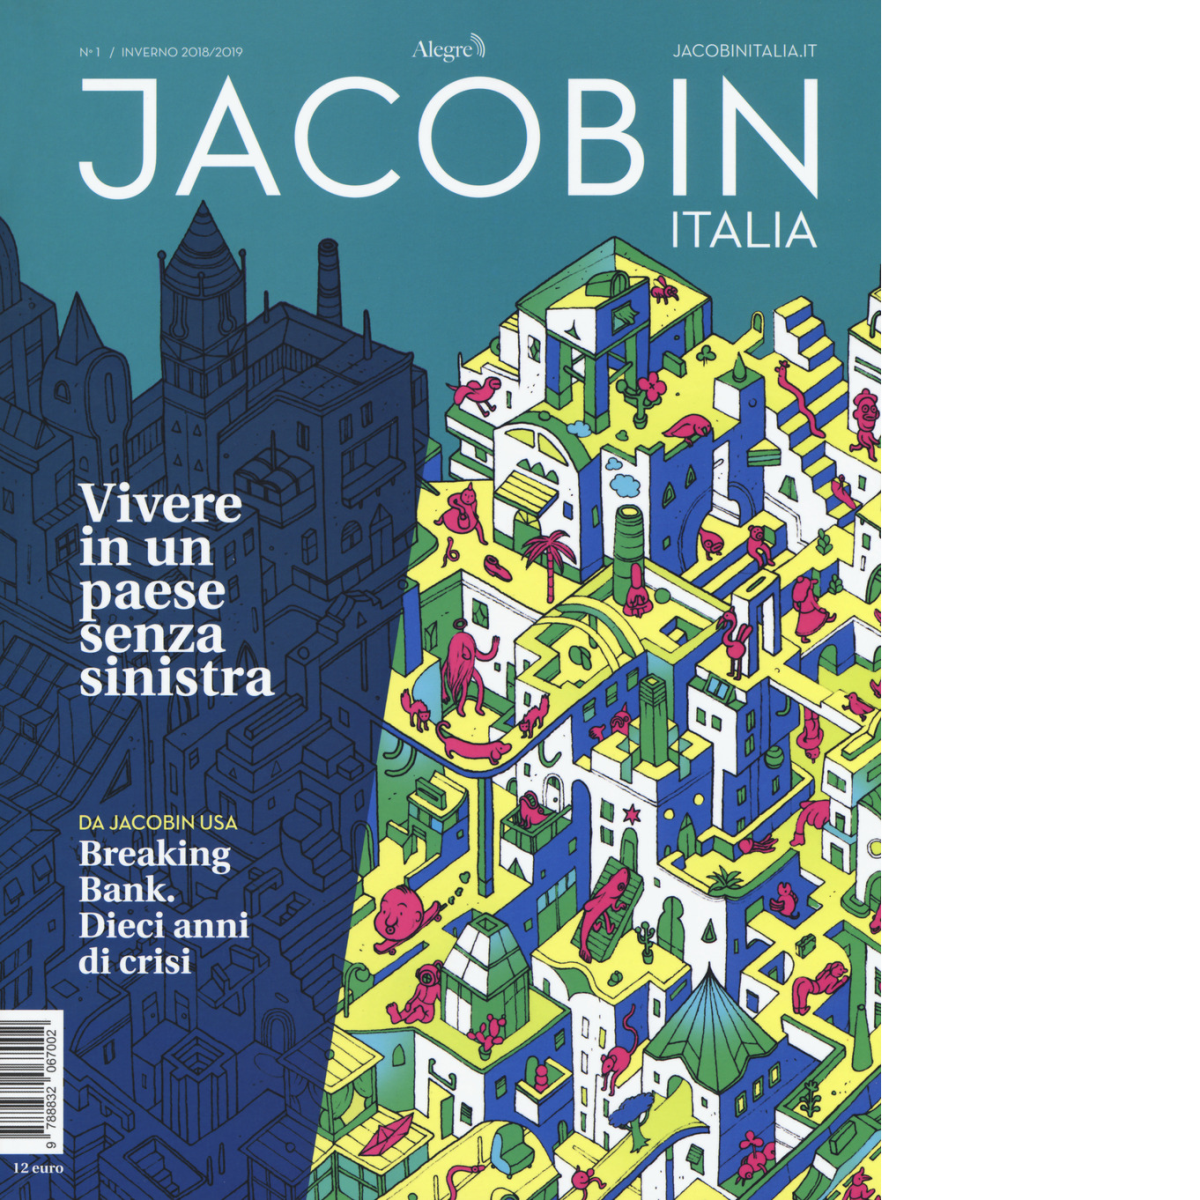 N.1 JACOBIN ITALIA INVERNO 2018/19 di AA.VV - edizioni alegre, 2019